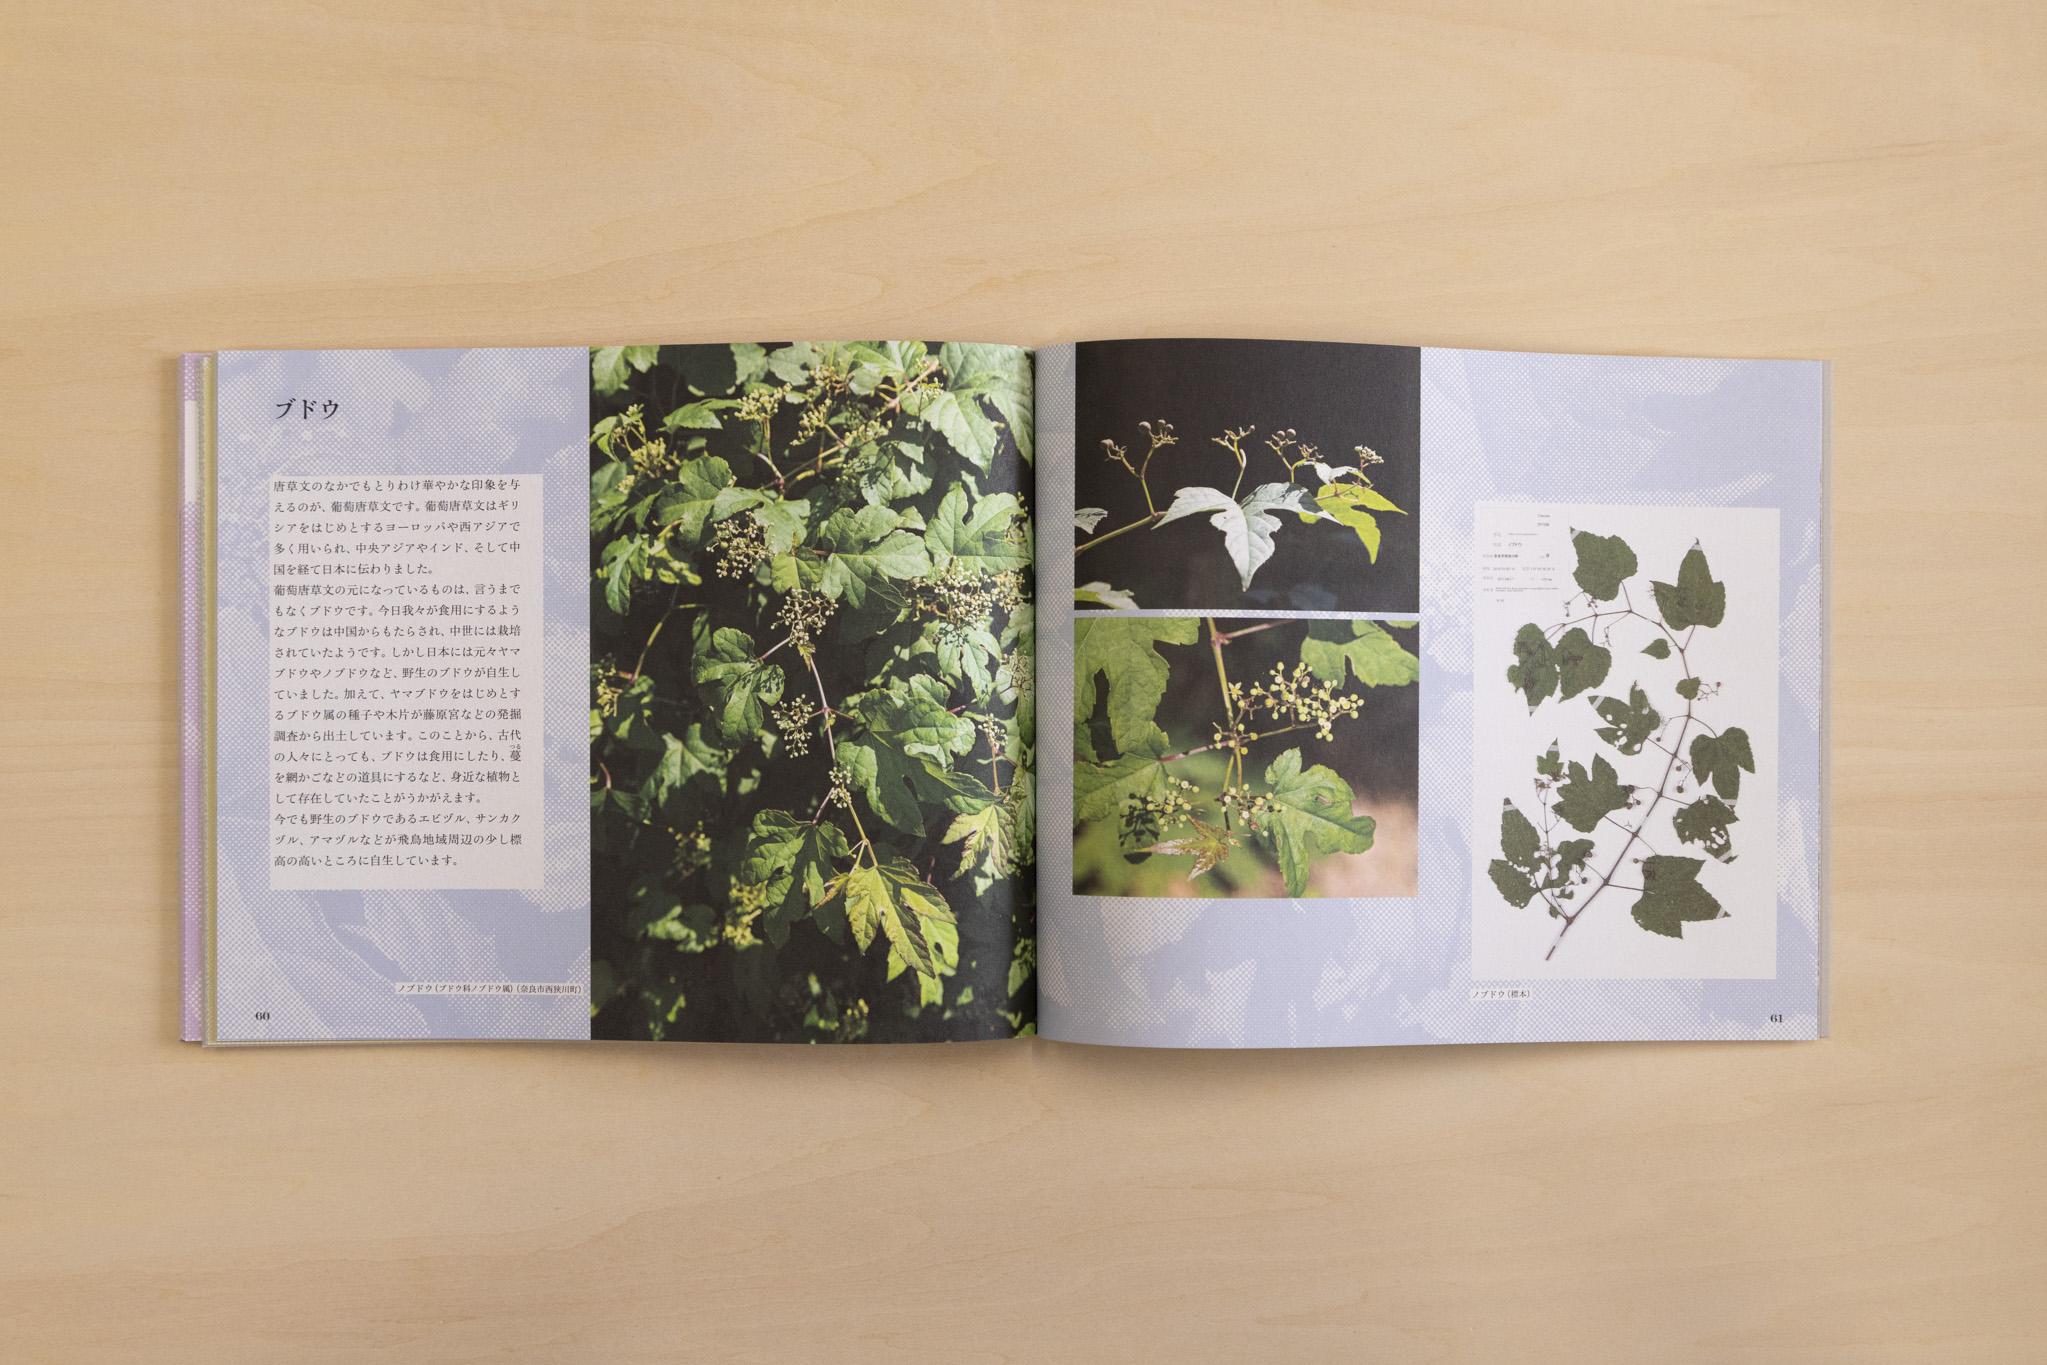 瓦の文様と関係のある植物を紹介しているページの画像